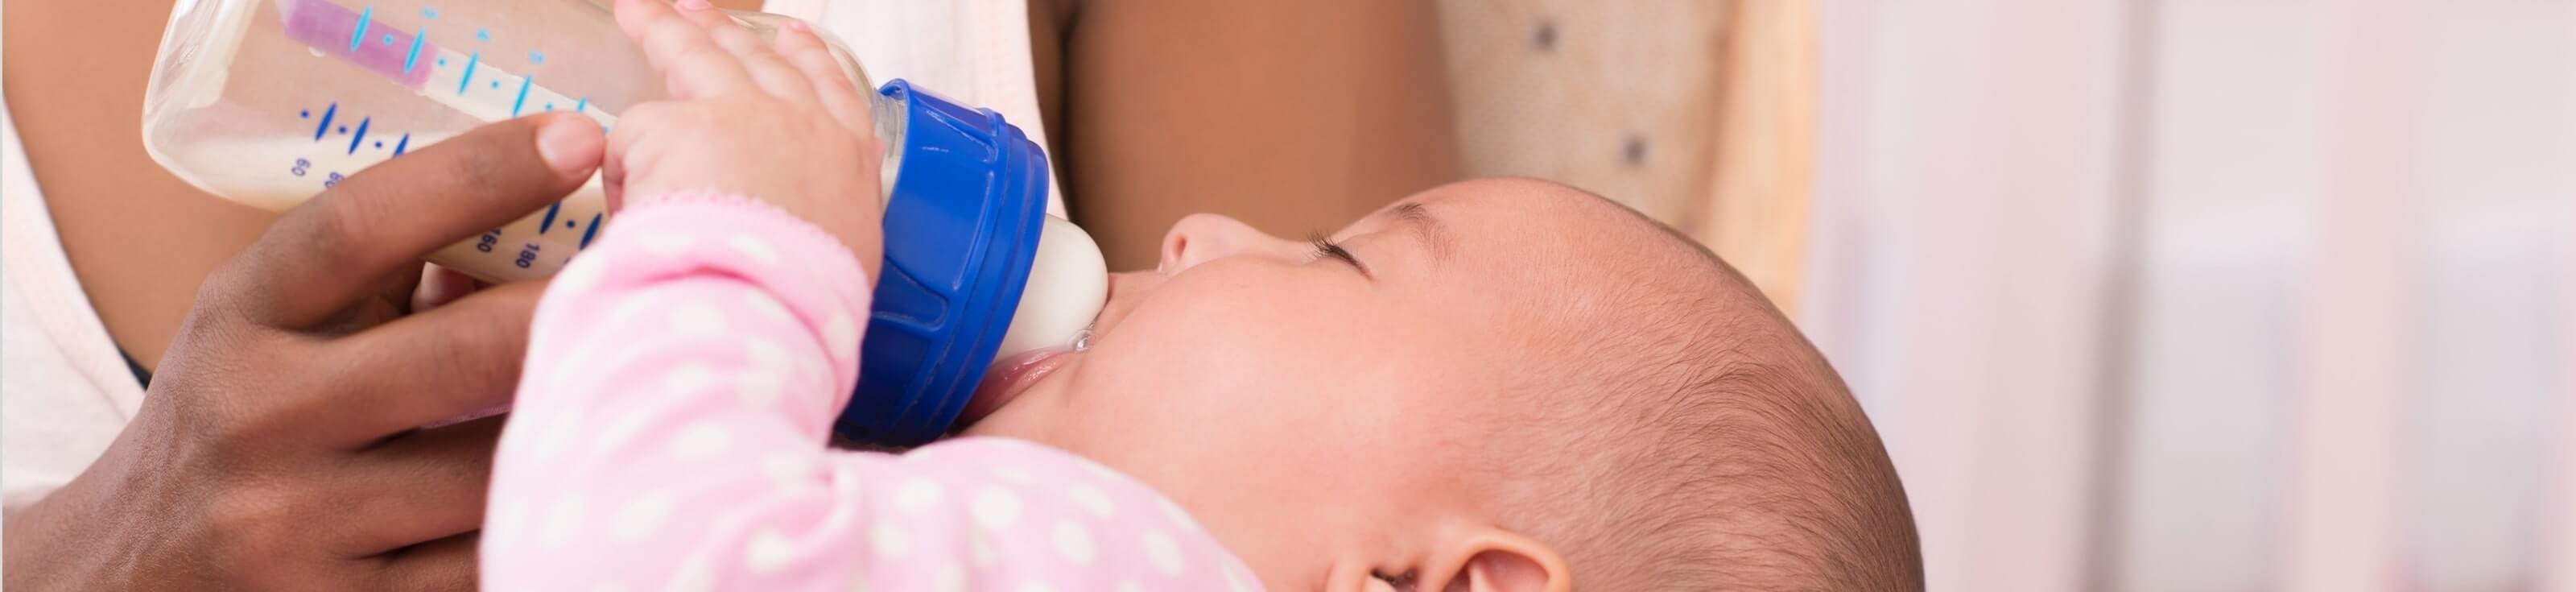 baby drinks infant formula